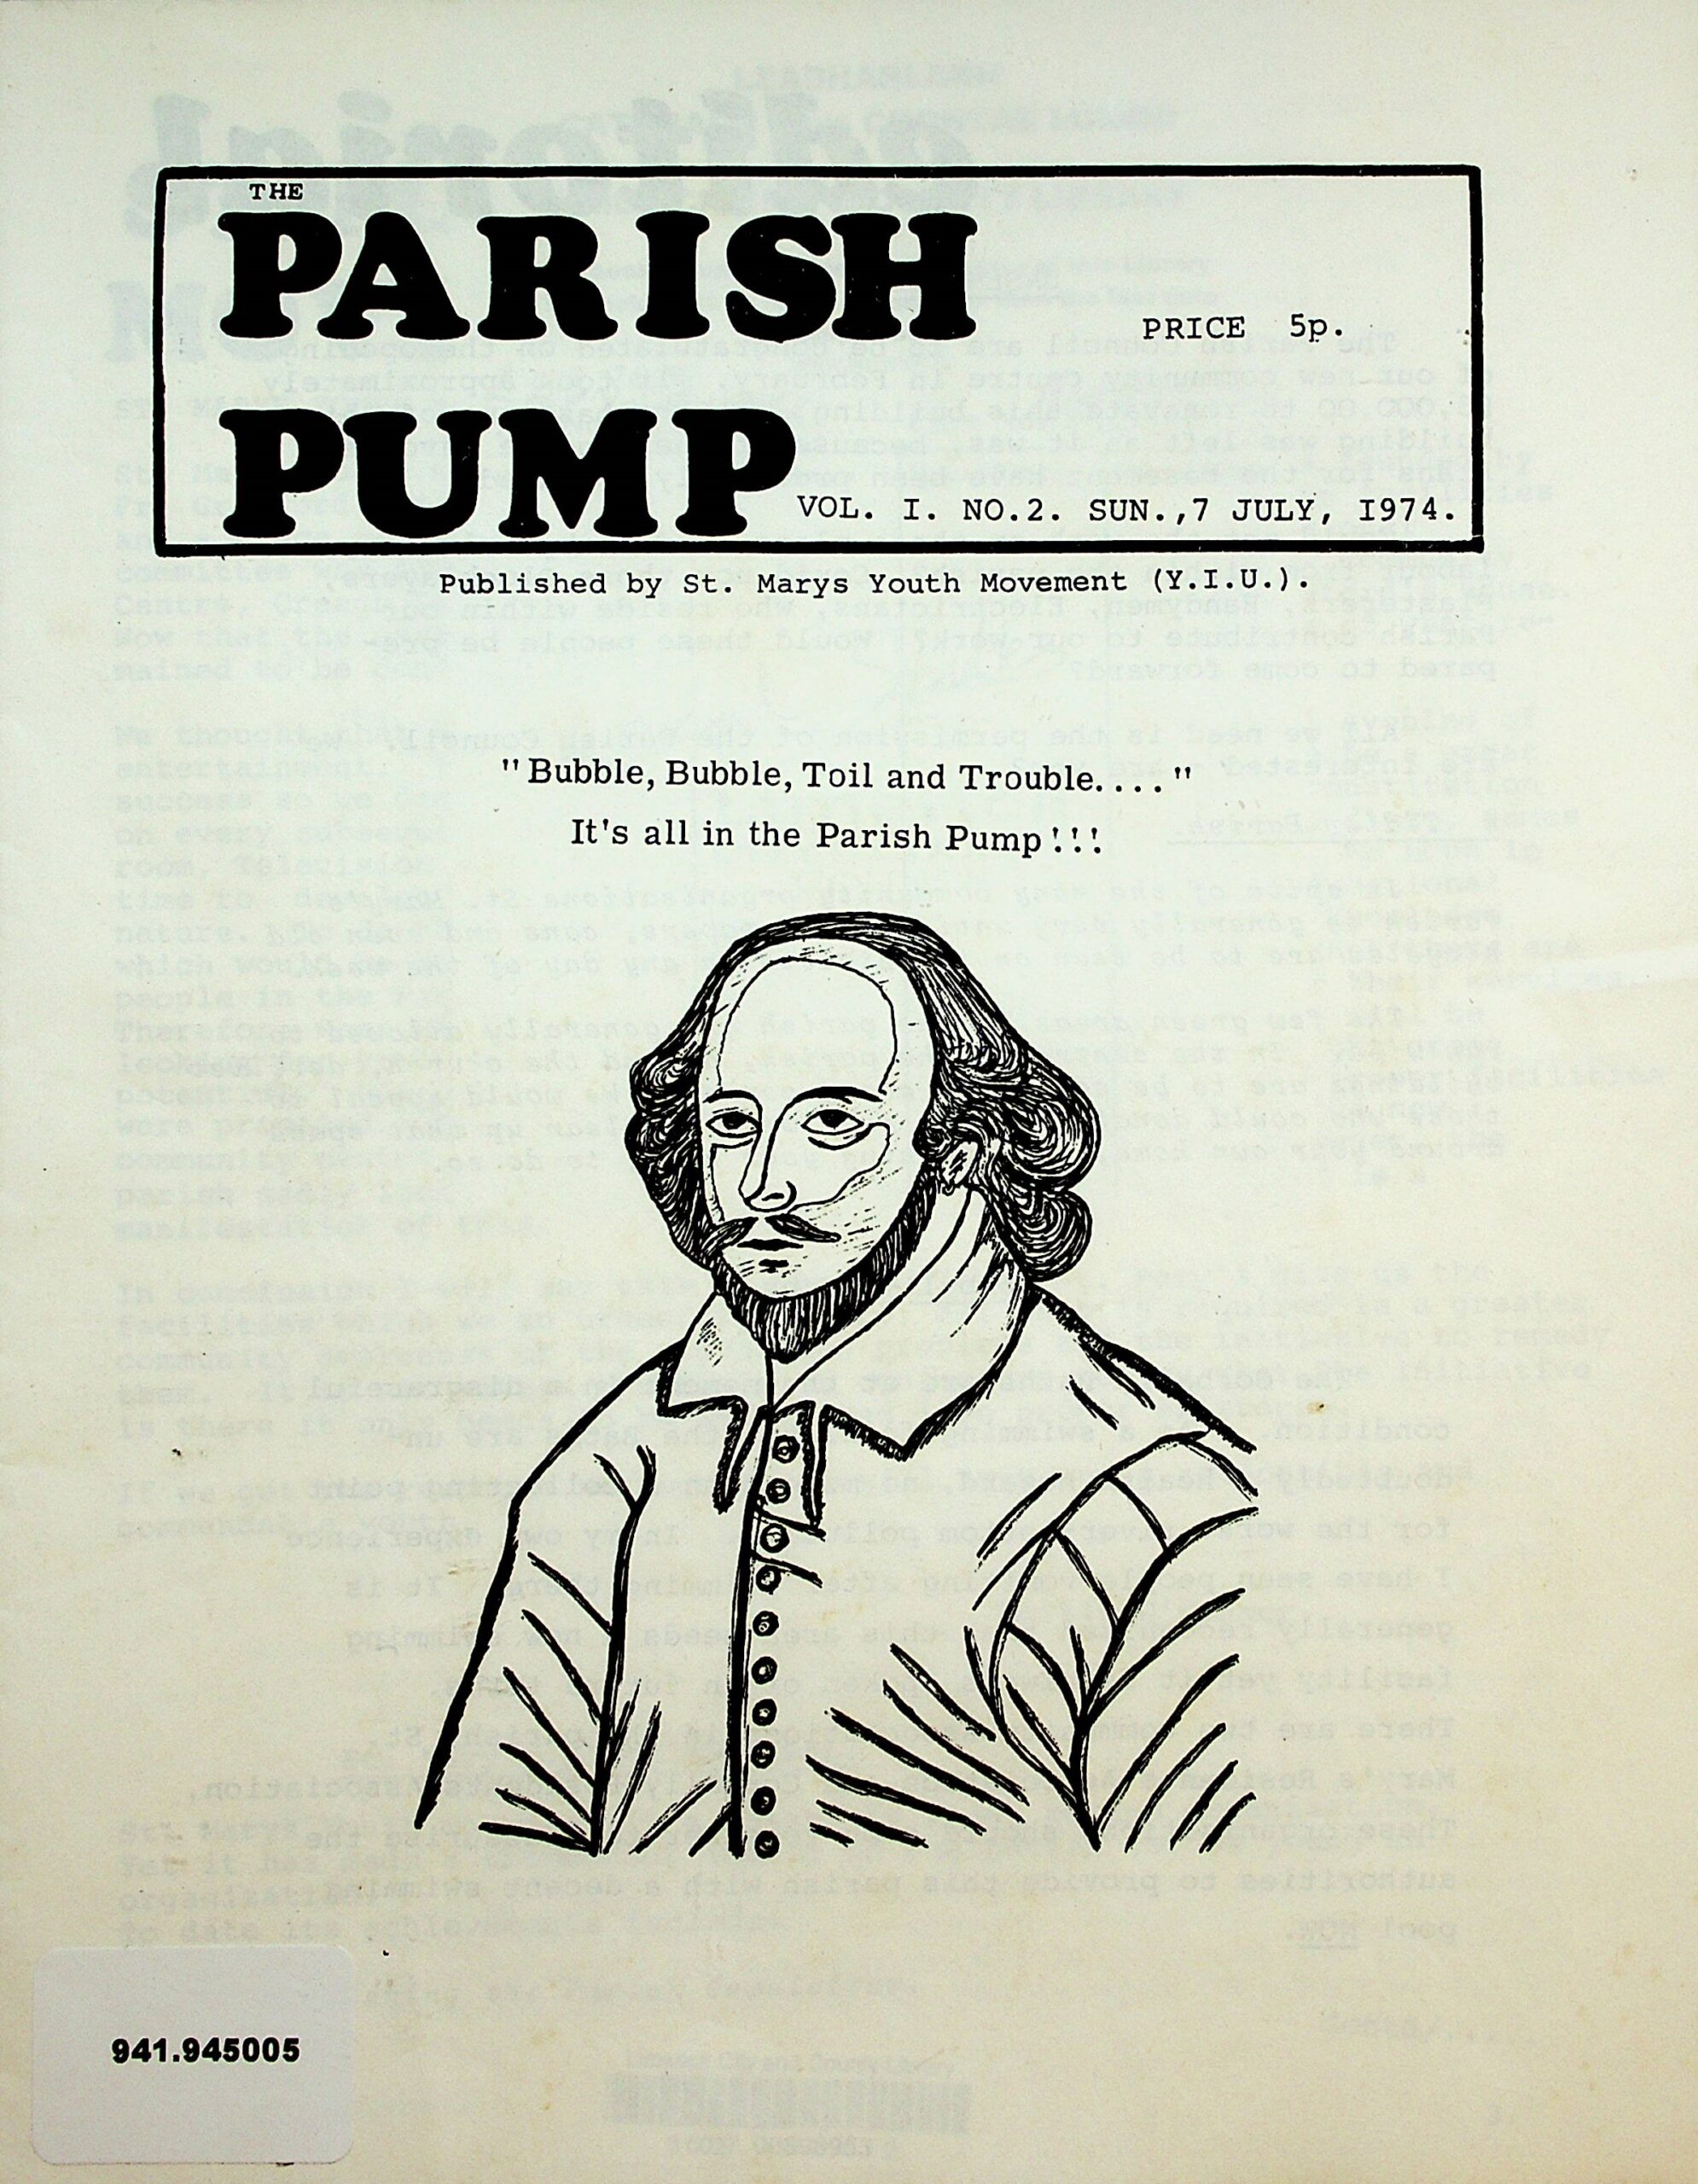 The Parish Pump